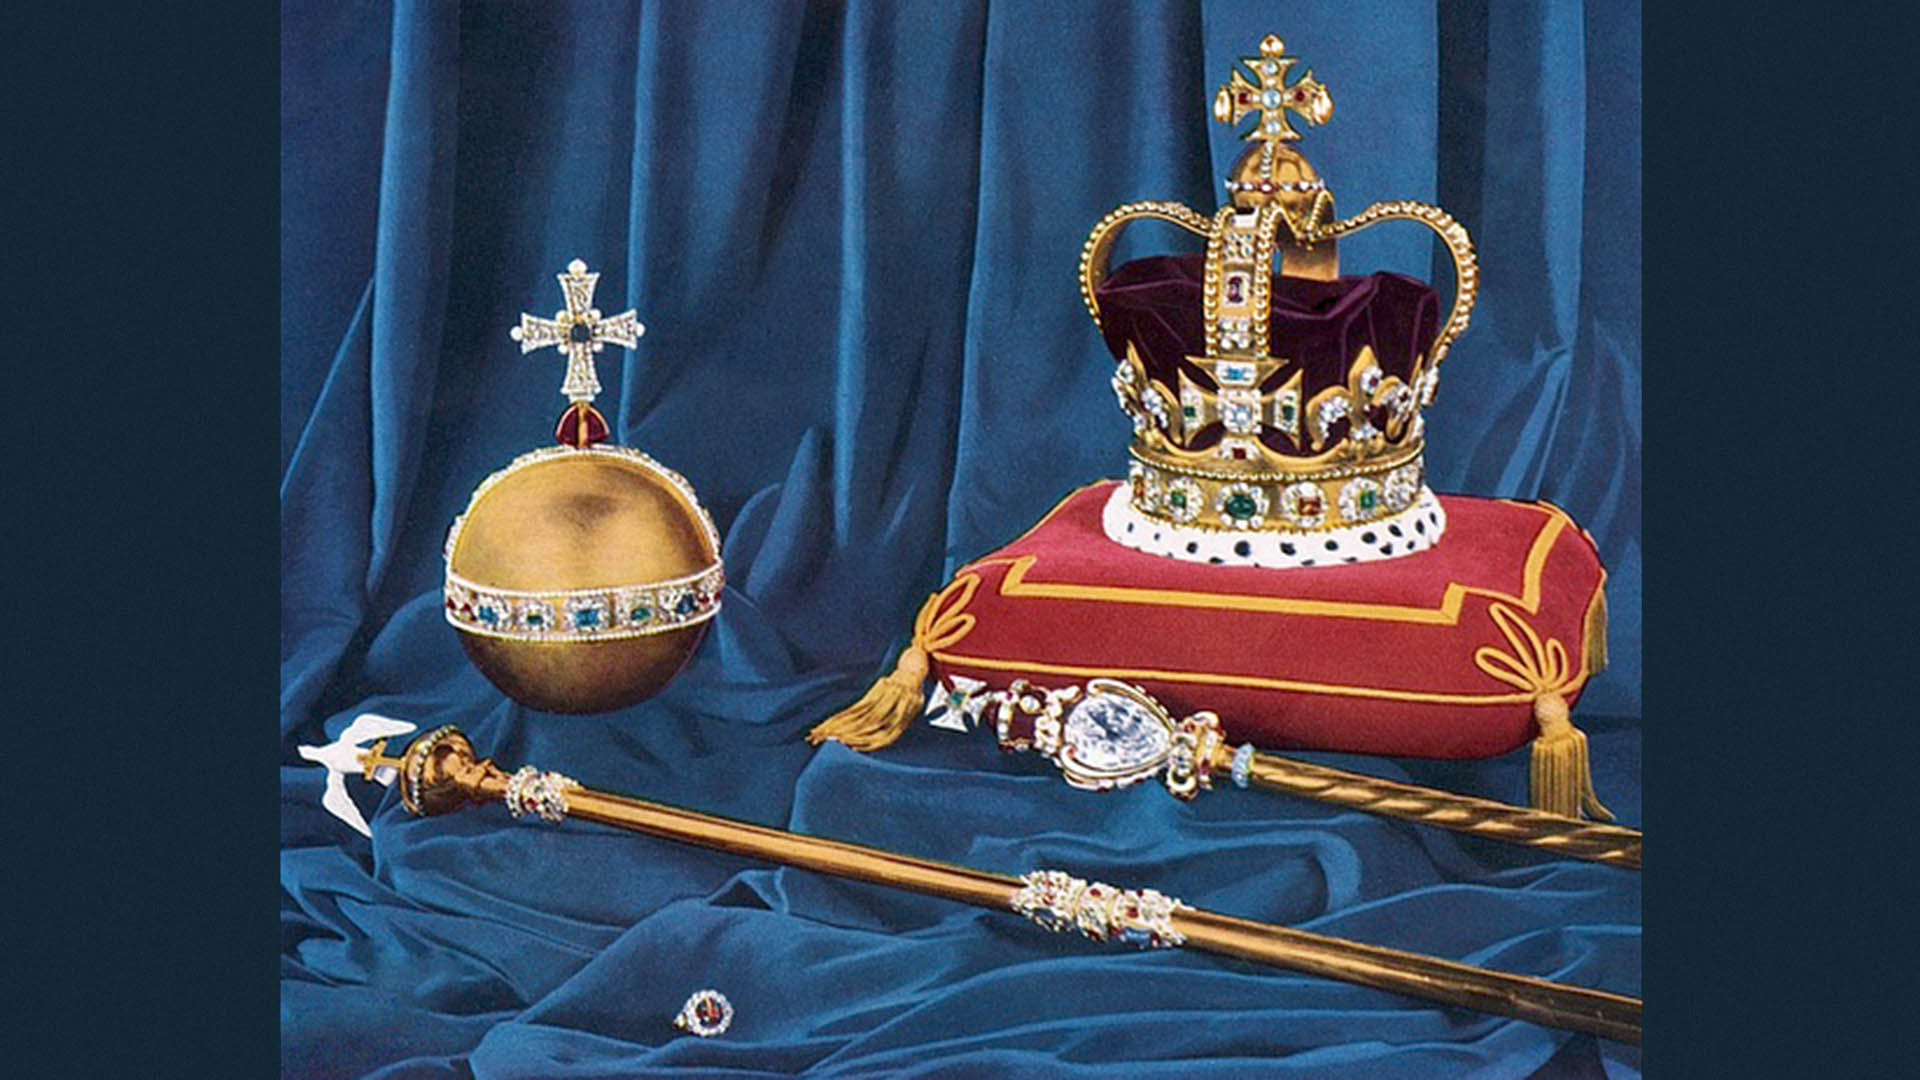 La corona di Saint Edward, l'anello (l'unione con l'Inghilterra) e i simboli del potere (il globo, lo scettro con la croce e lo scettro con la colomba) utilizzati durante la cerimonia di incoronazione del Re d'Inghilterra